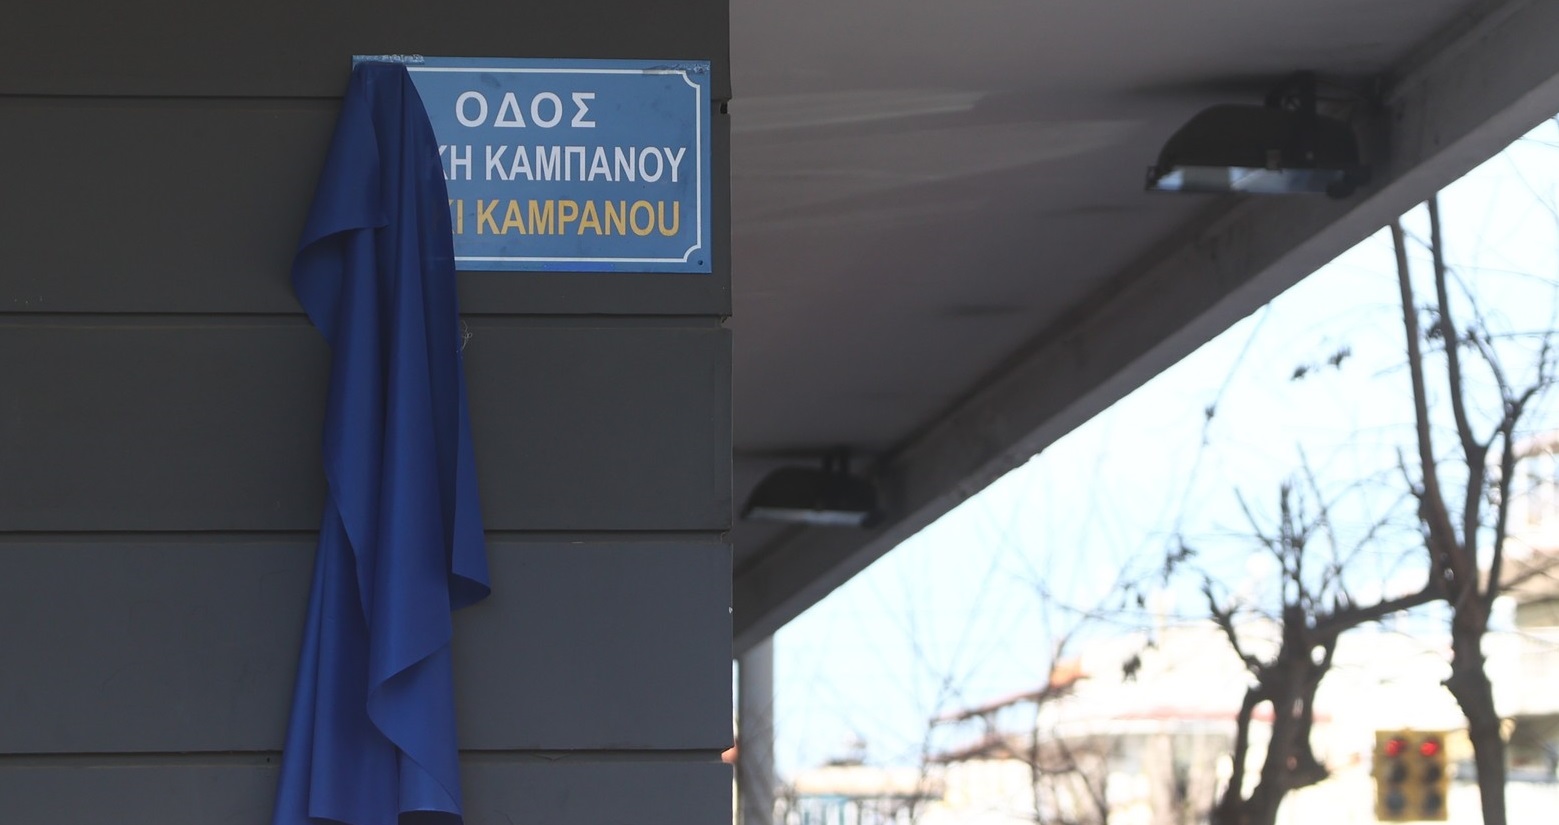 Θεσσαλονίκη: Συνελήφθη 15χρονη για τον ξυλοδαρμό του 14χρονου στην οδό Άλκη Καμπανού